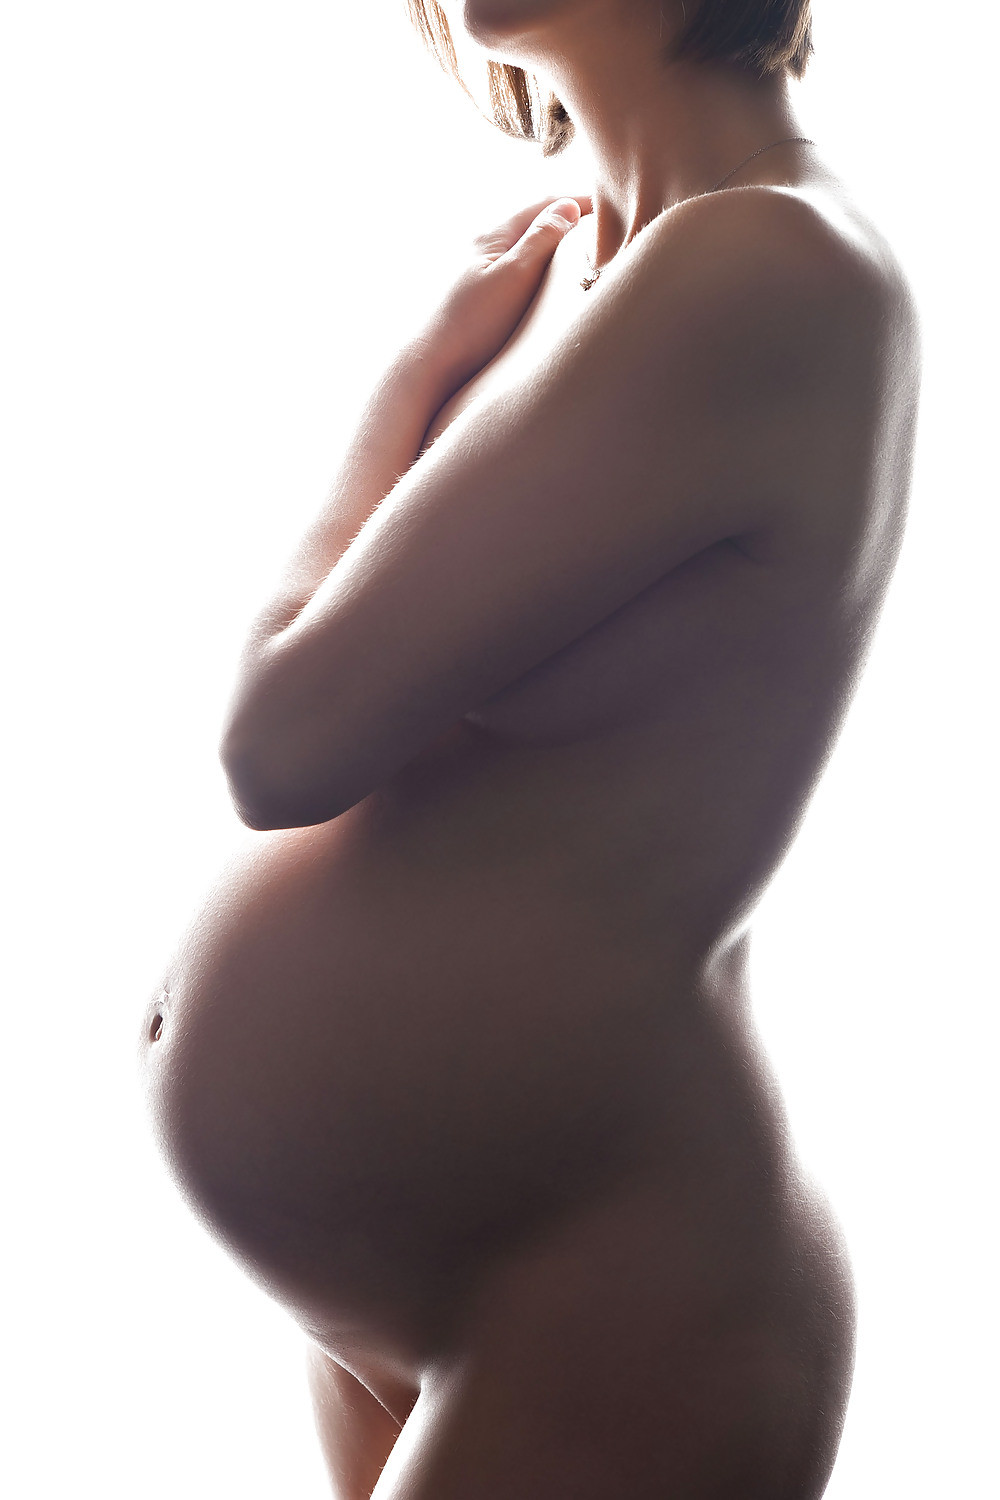 Bilder von nackten schwangeren Ehefrauen
 #67712626